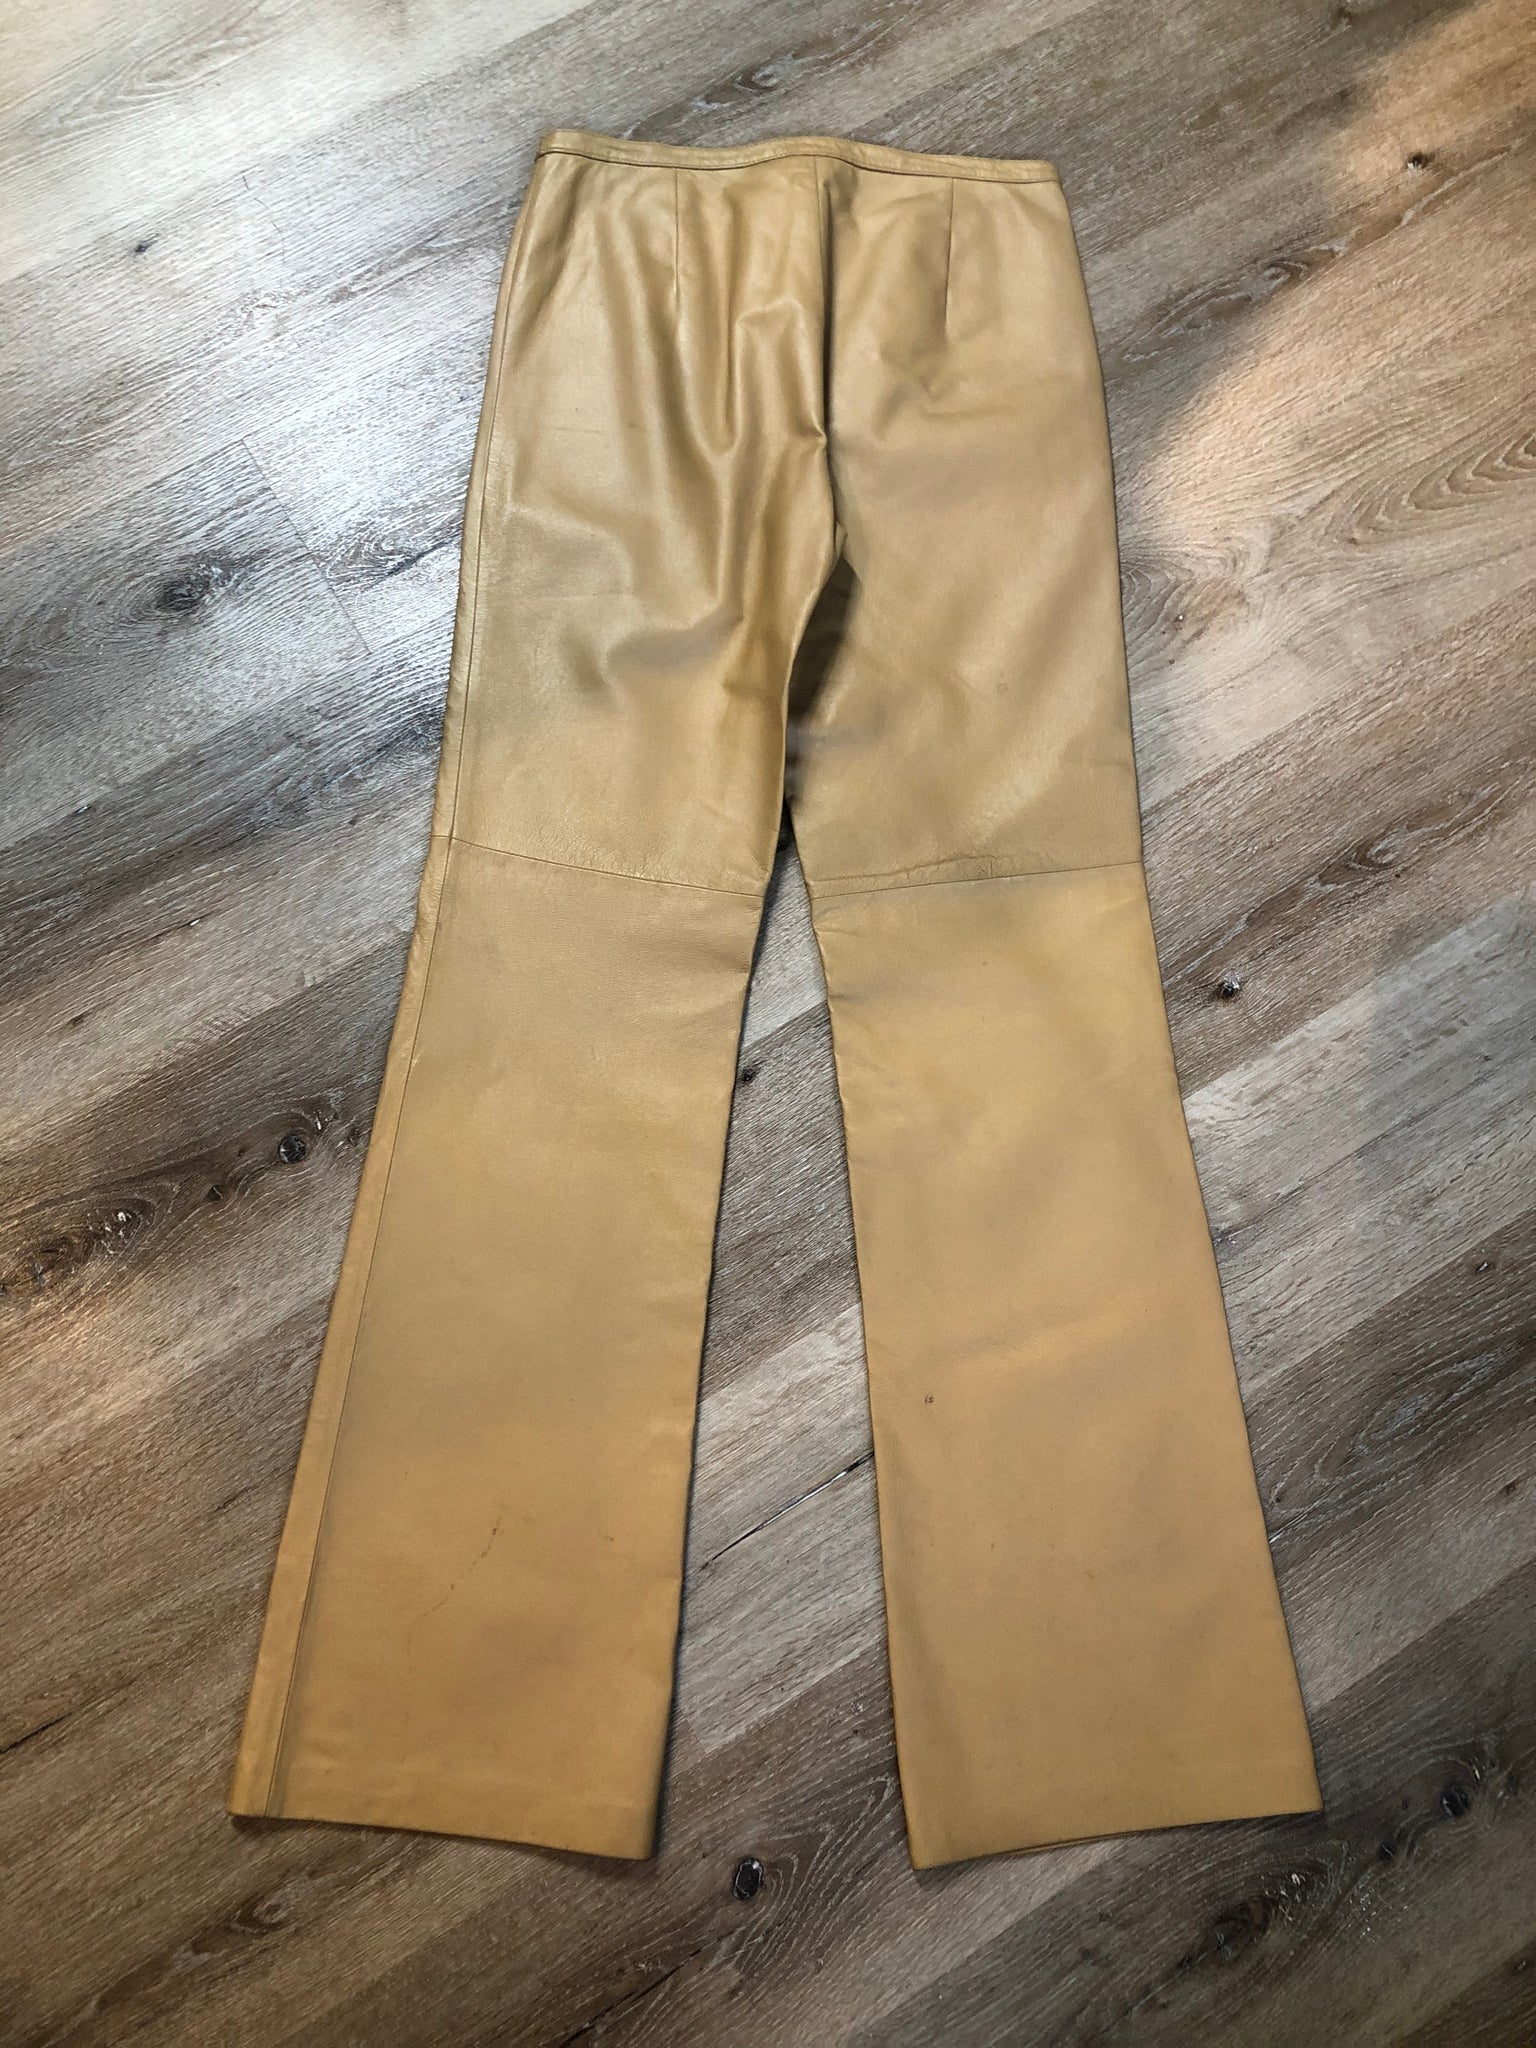 Cami International Beige Leather Pants – KingsPIER vintage